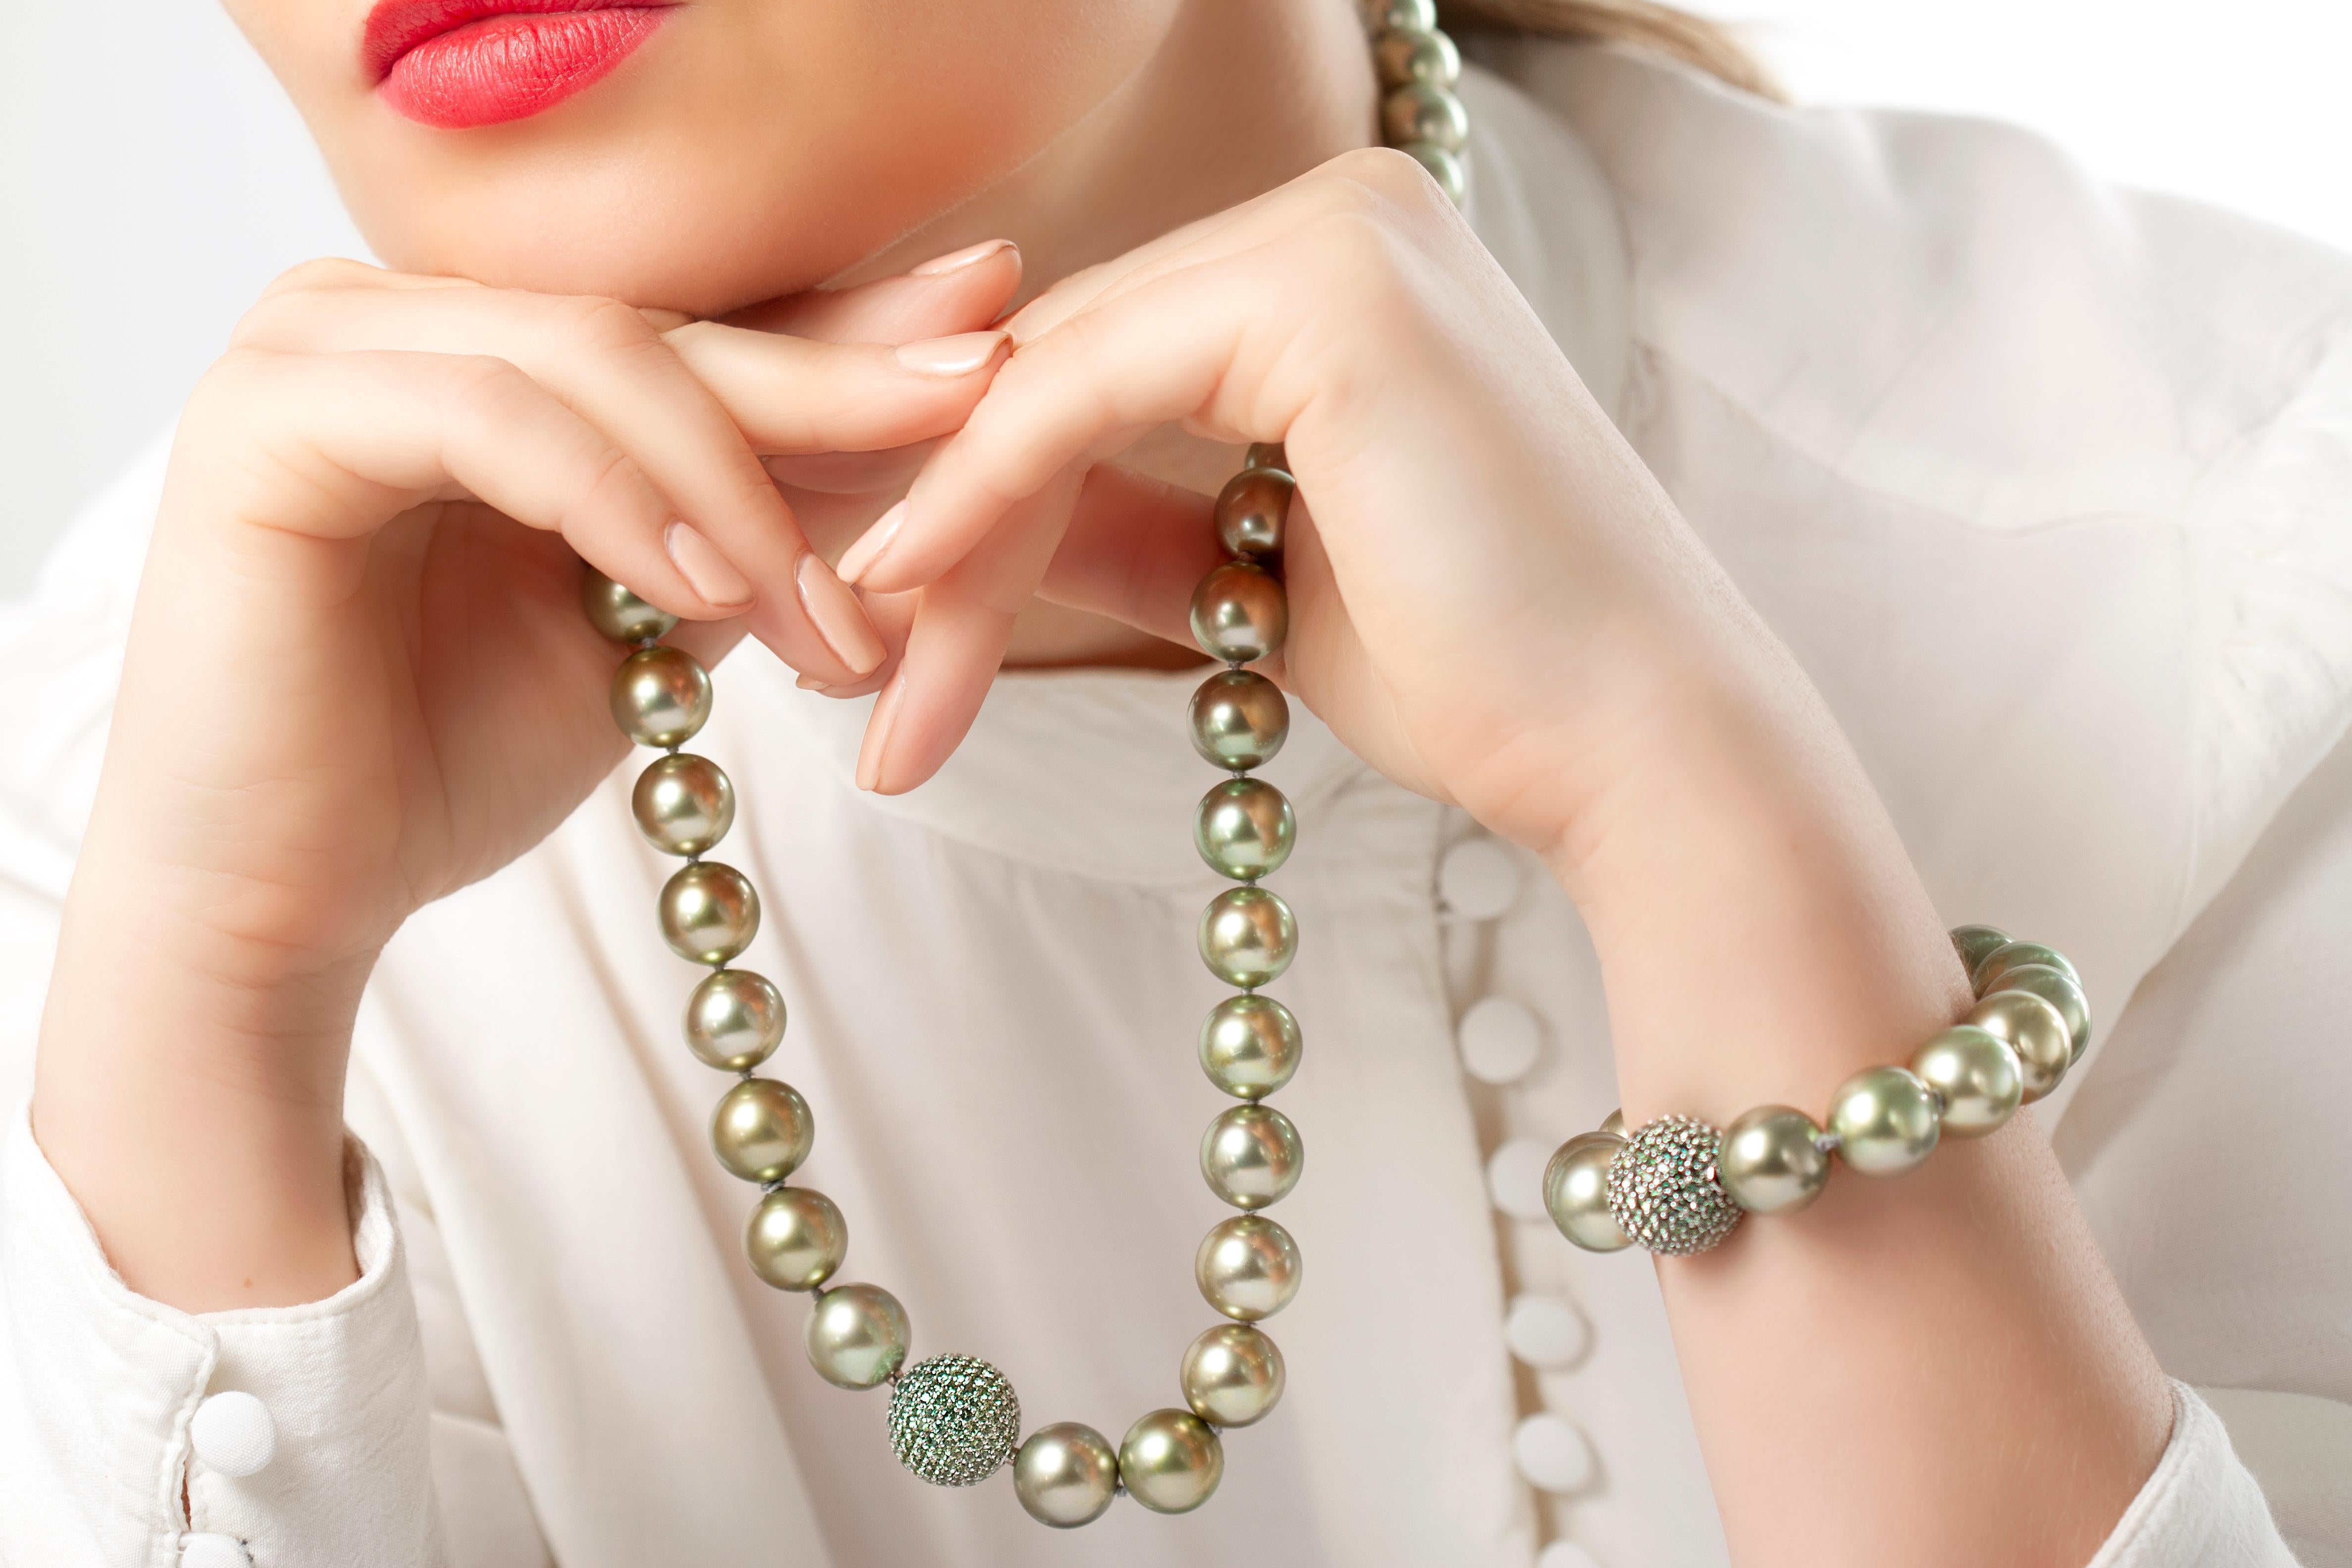 Diese spektakuläre Halskette von Yoko London zeichnet sich durch große, pistazienfarbene Tahiti-Perlen aus, die sanft in der Größe von 12-14,9 mm abgestuft sind, wodurch die Kette elegant am Hals ihrer Trägerin sitzt. Der zarte Farbton der Perlen